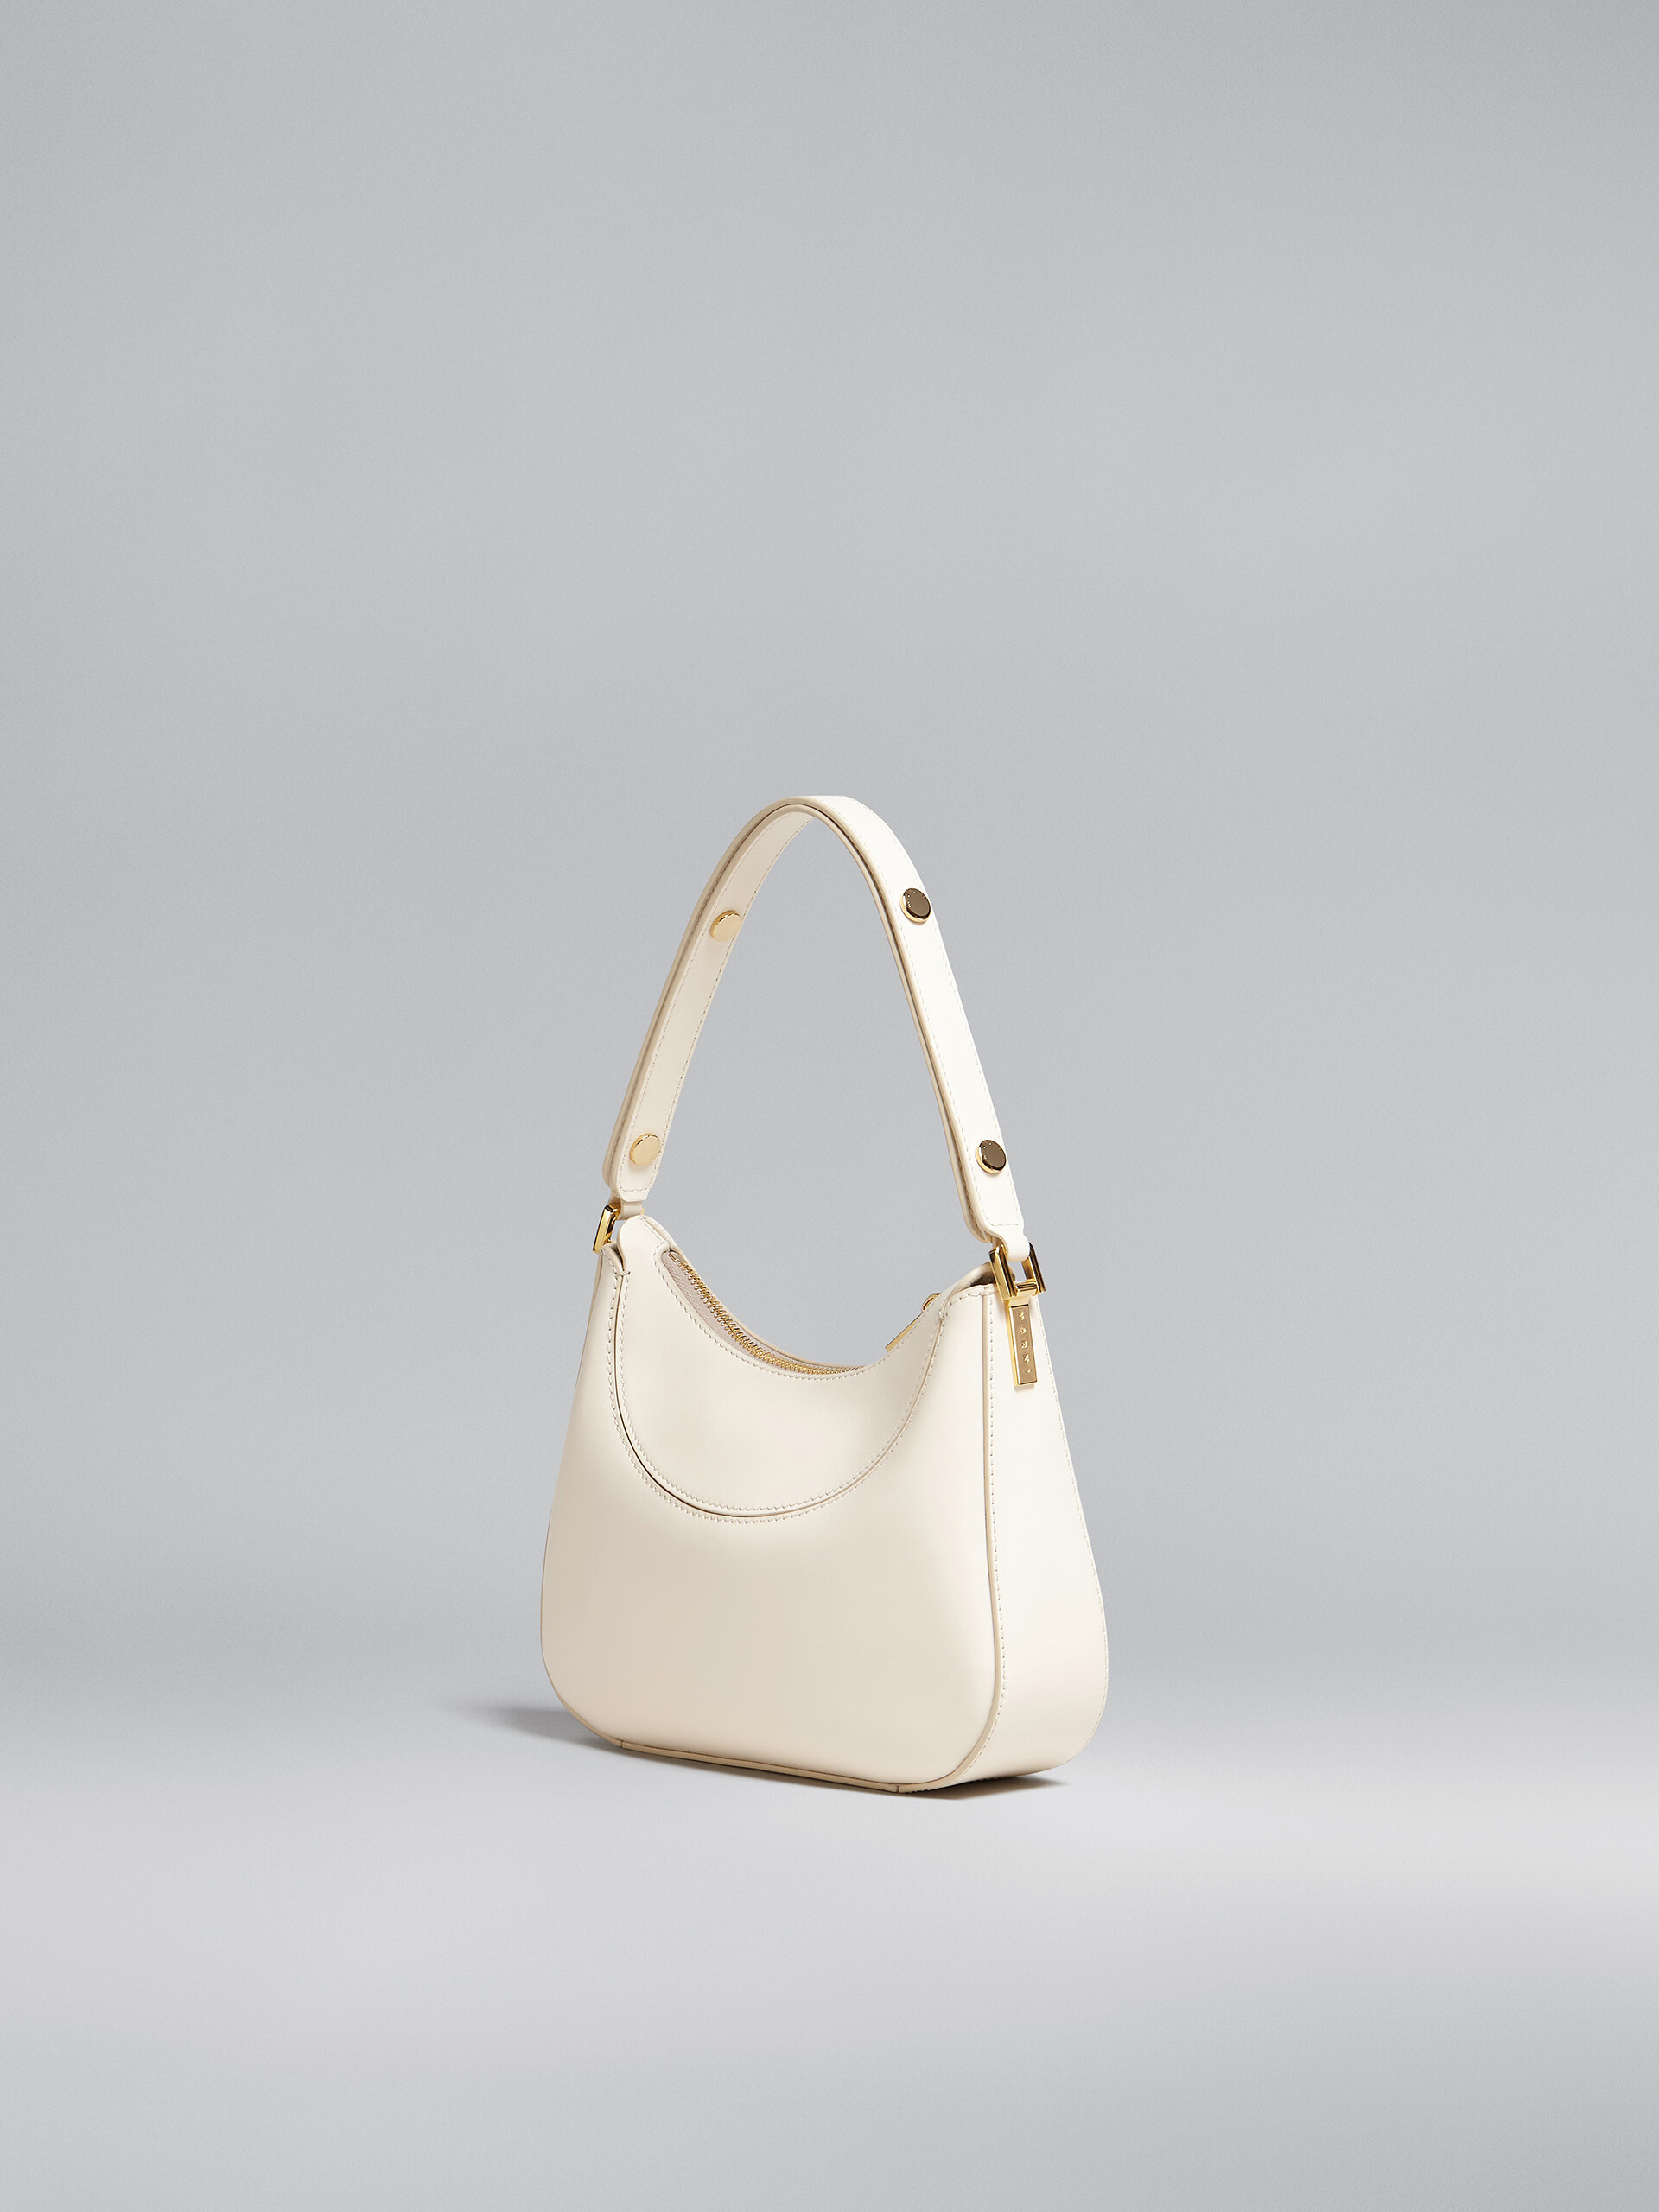 Milano mini bag in white leather - Handbag - Image 3